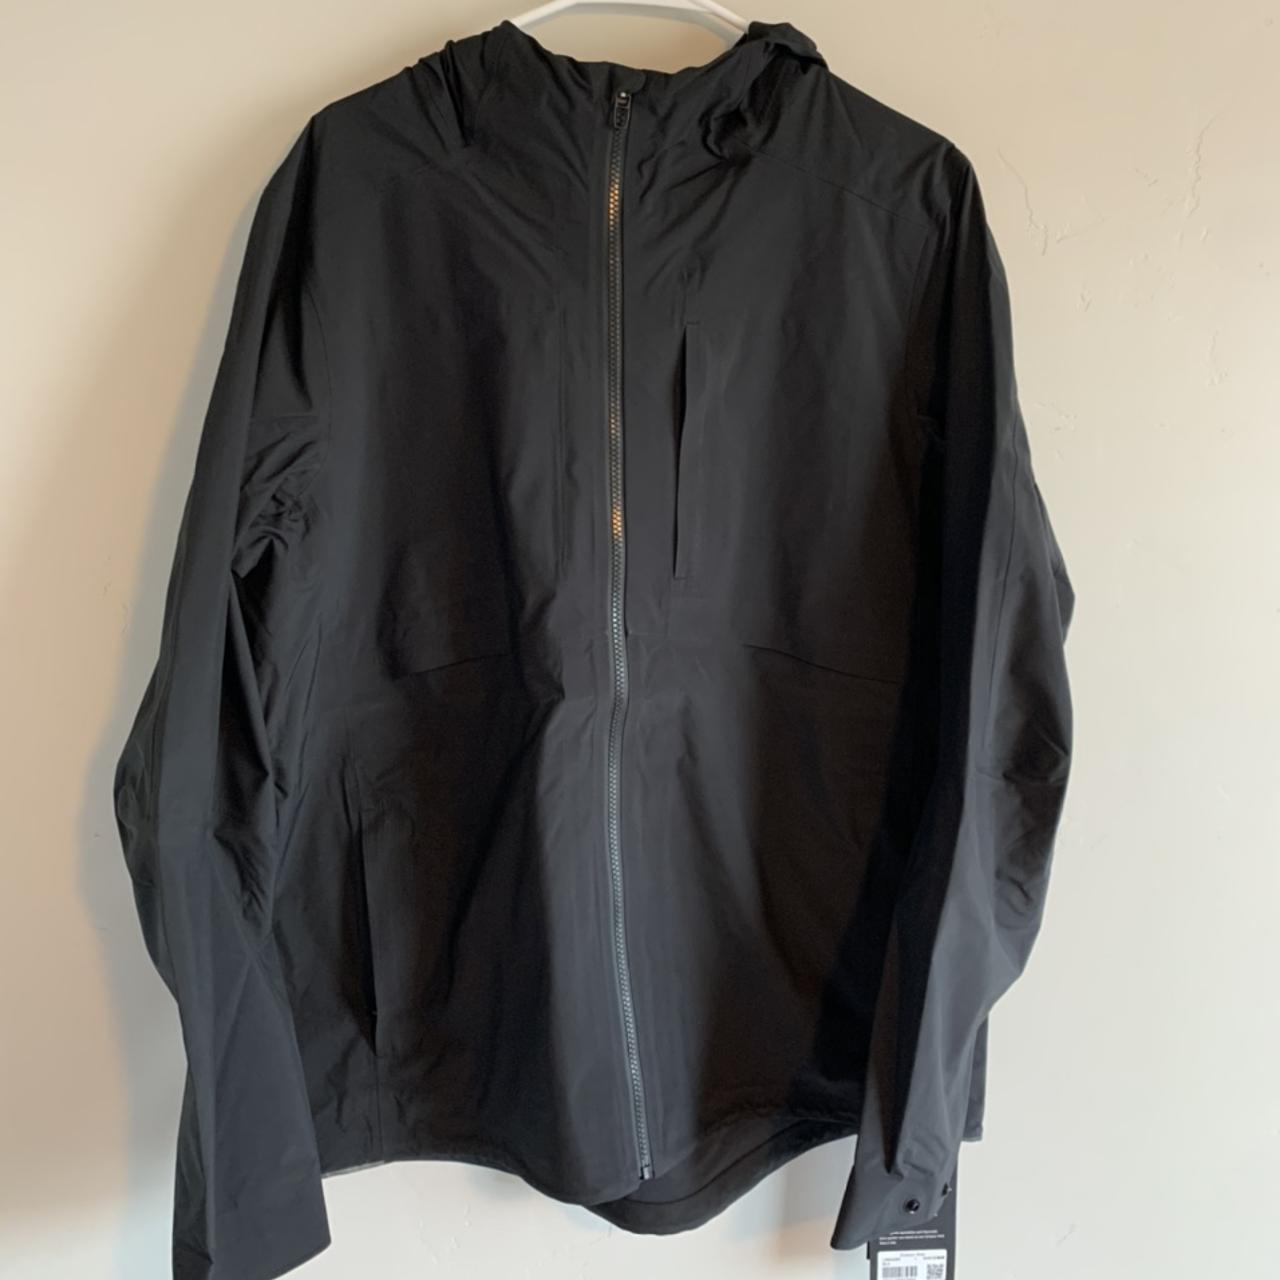 Lululemon Men's Black Jacket | Depop